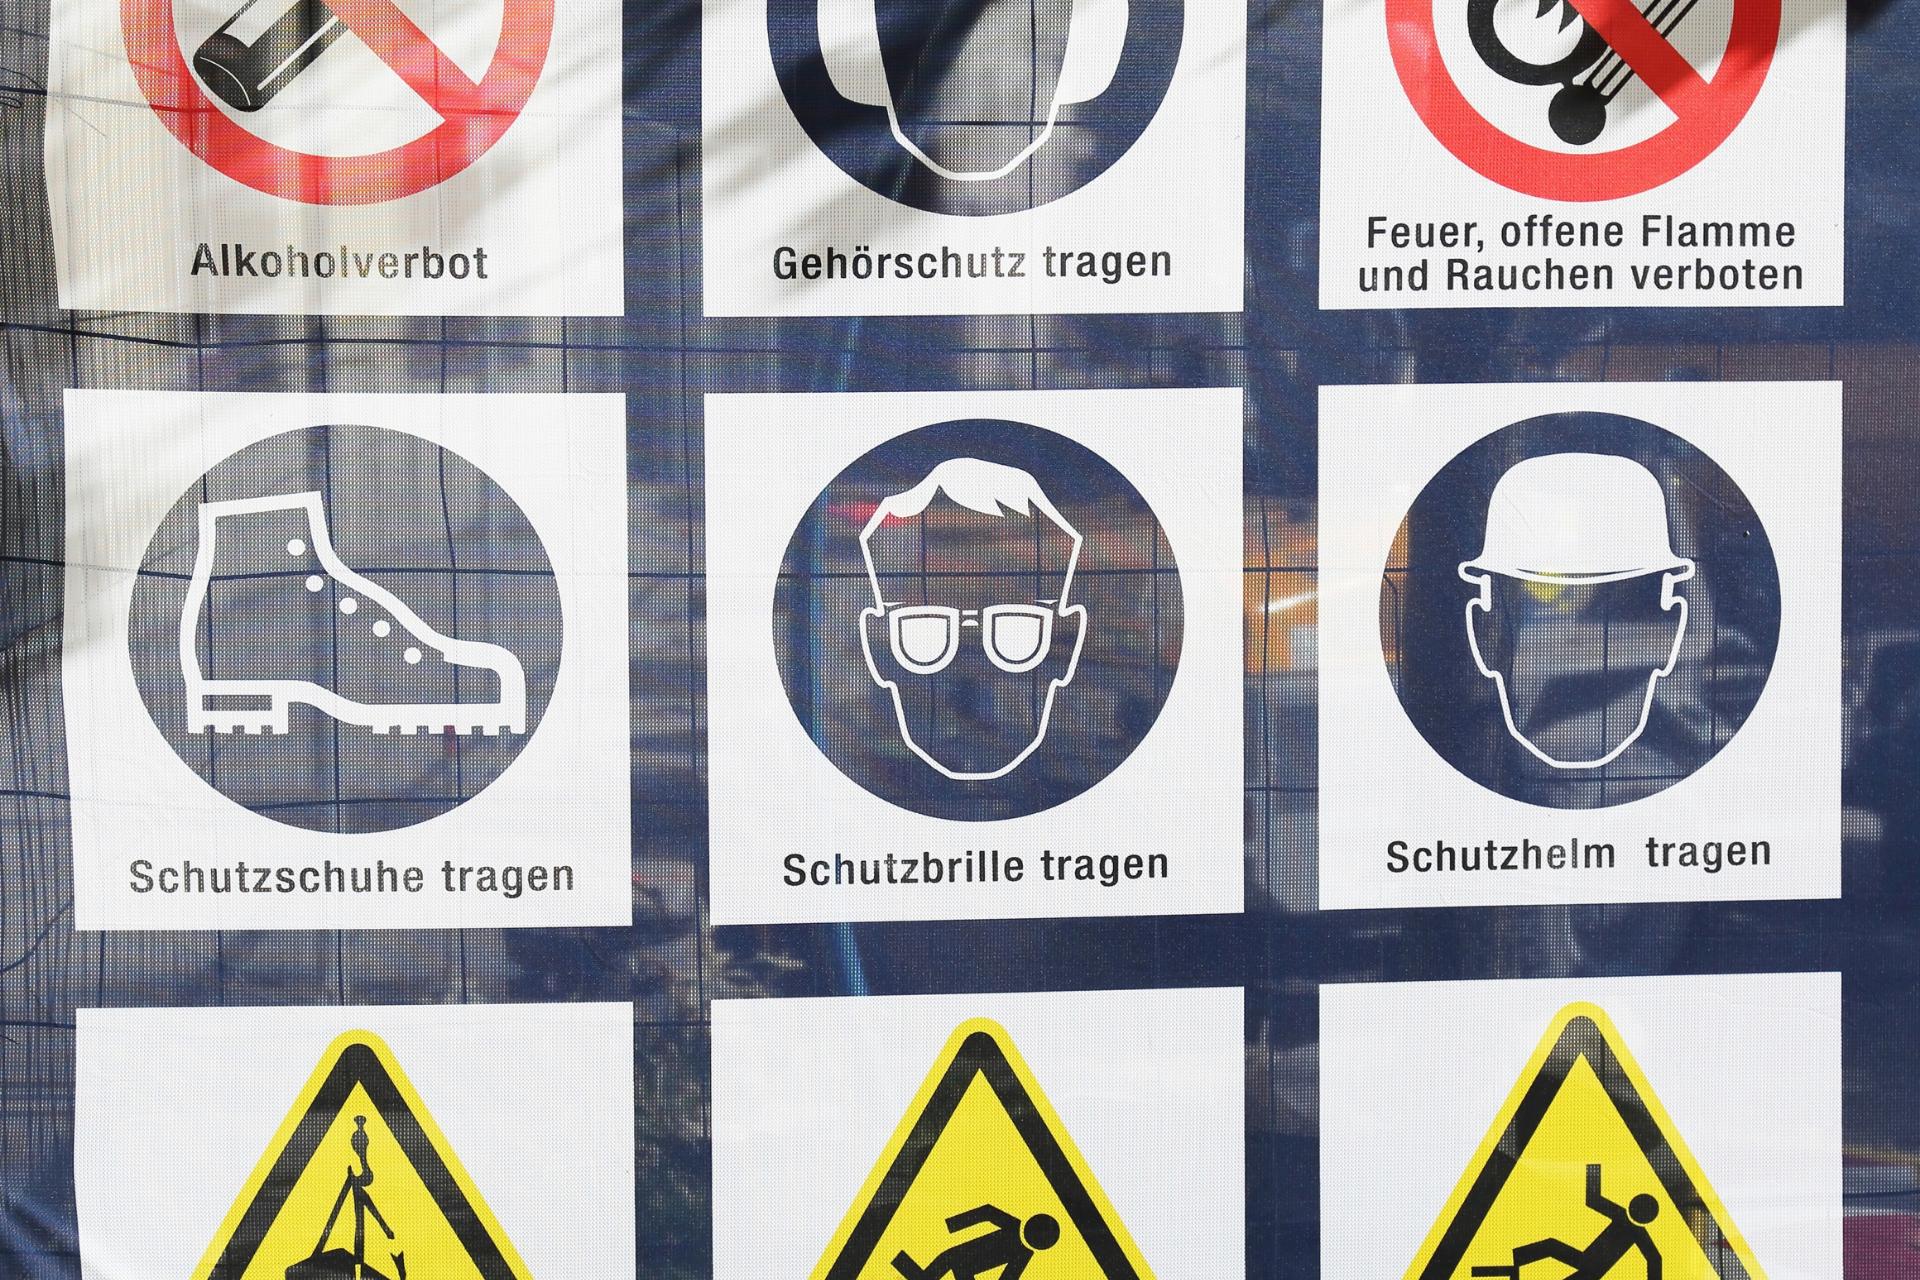 Symbole, die verschiedene Regeln mit deutschem Text darstellen